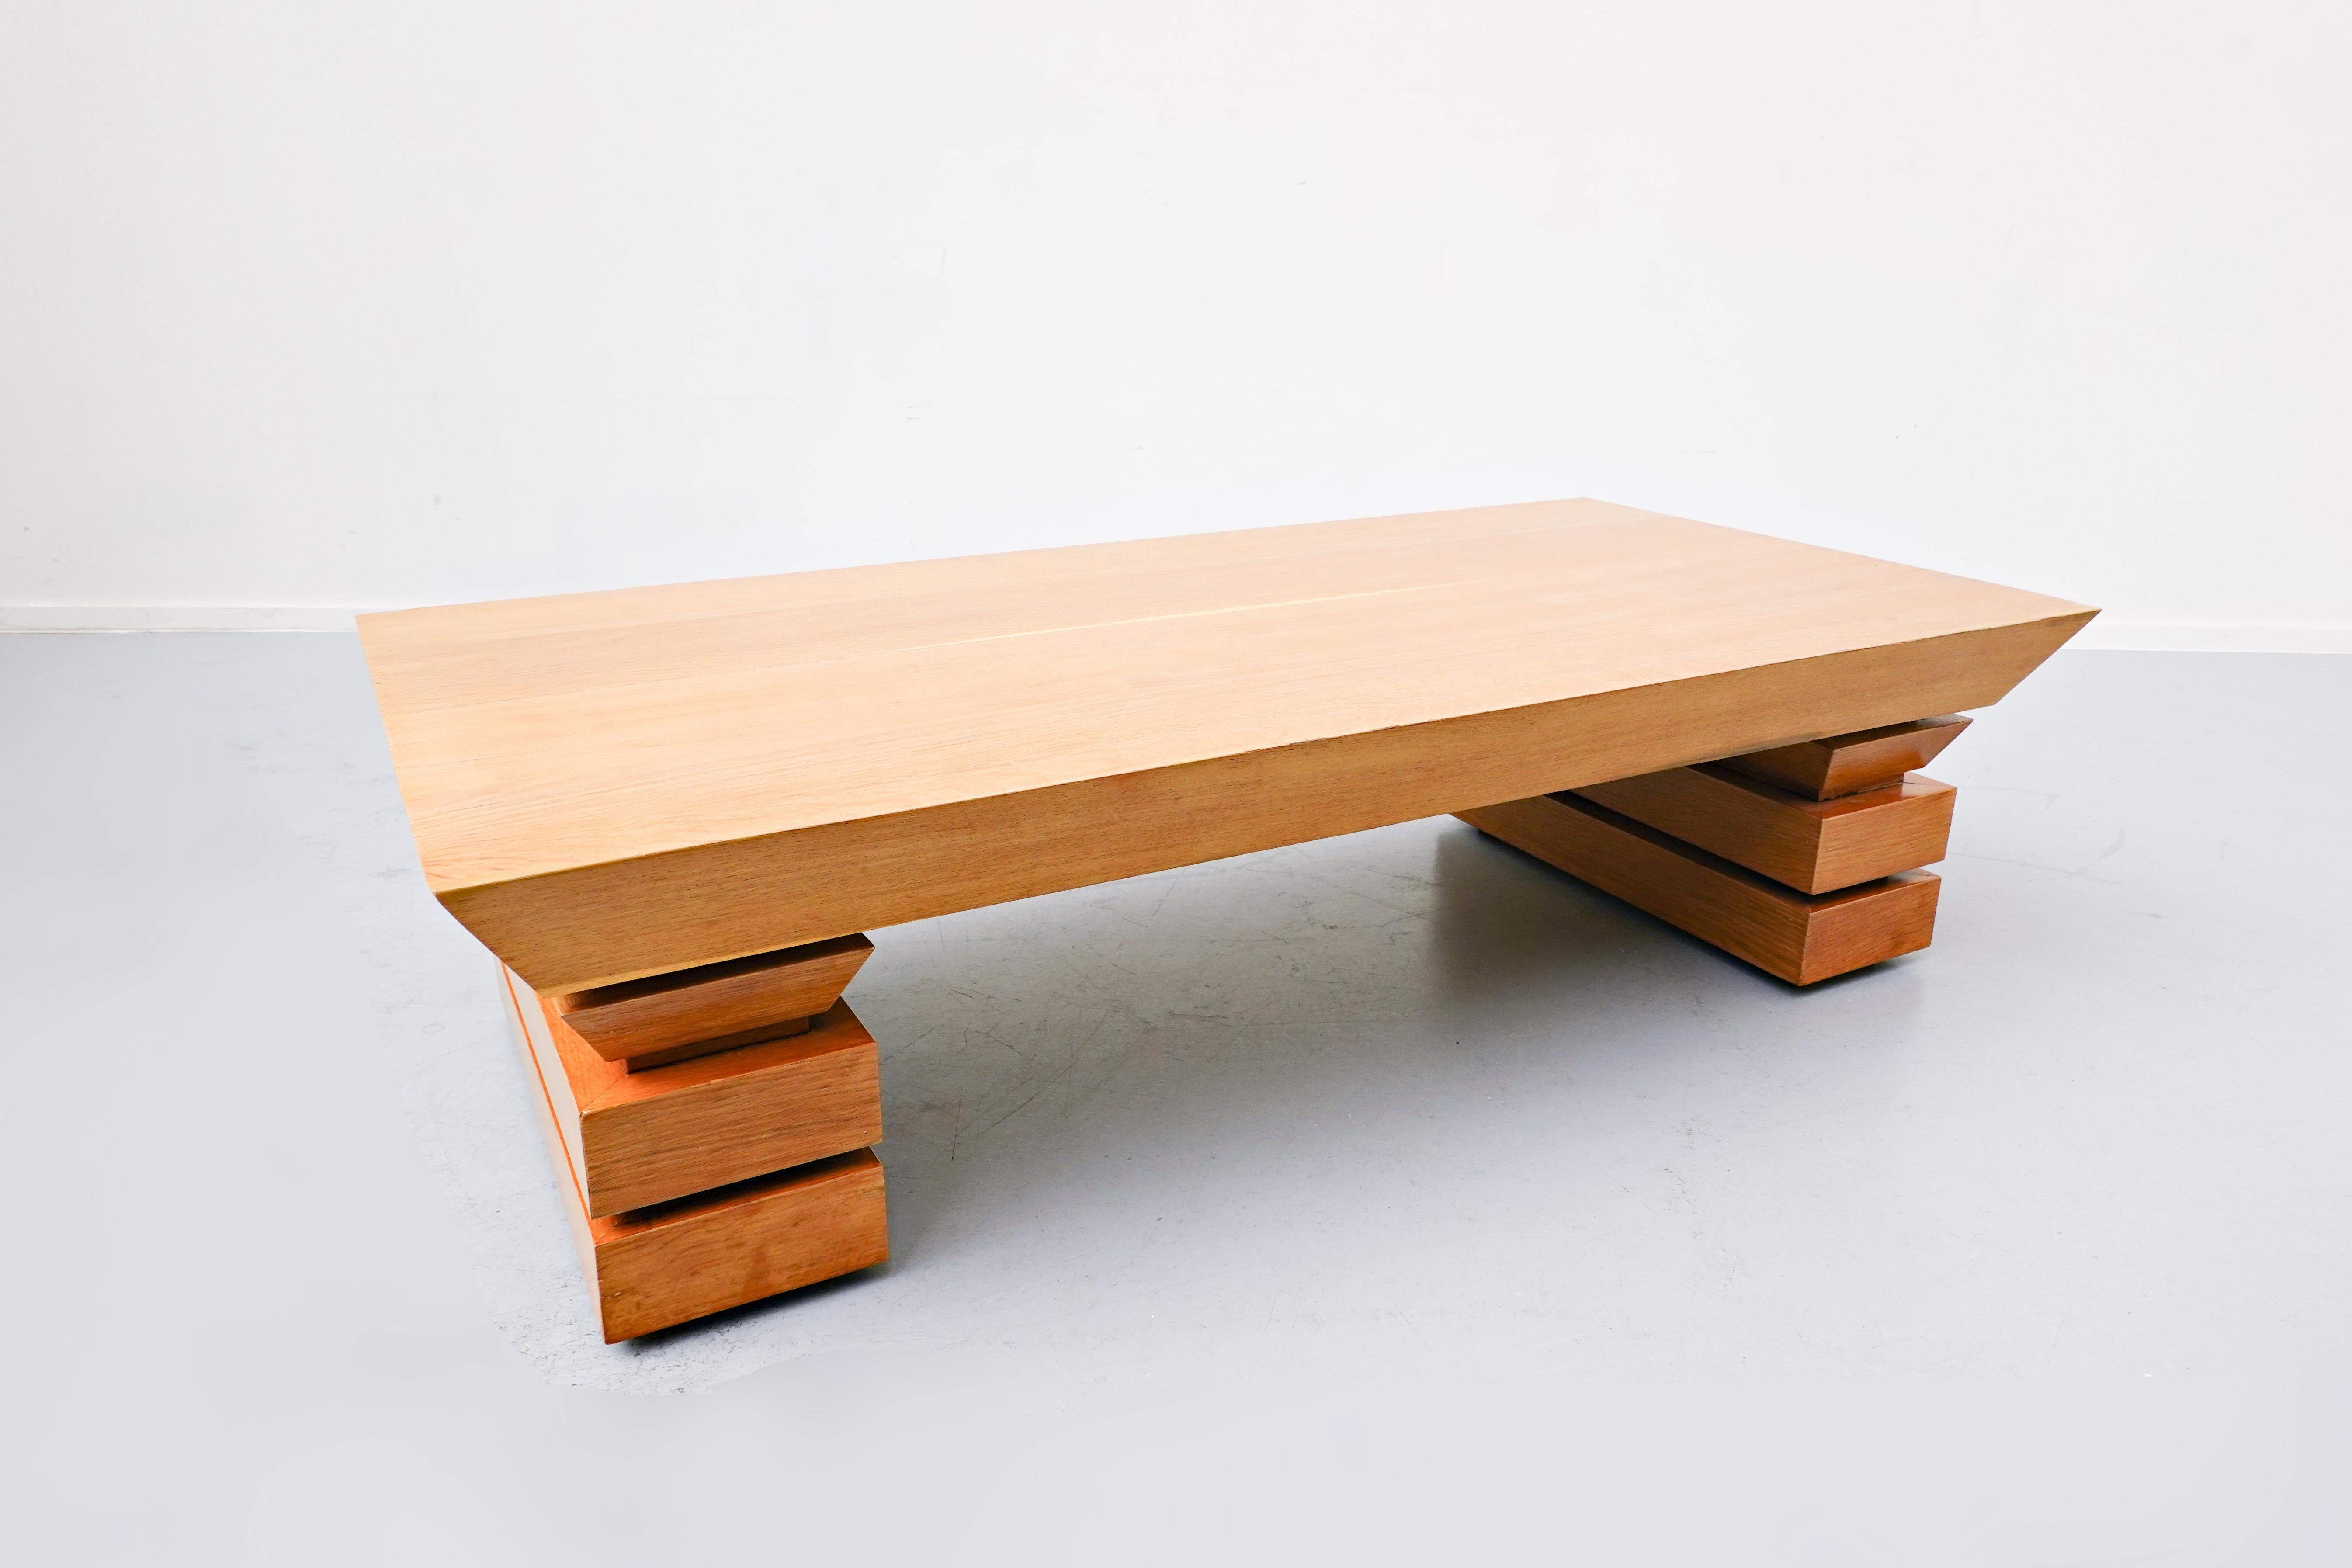 Post modernist coffee table, oak, 1980s.